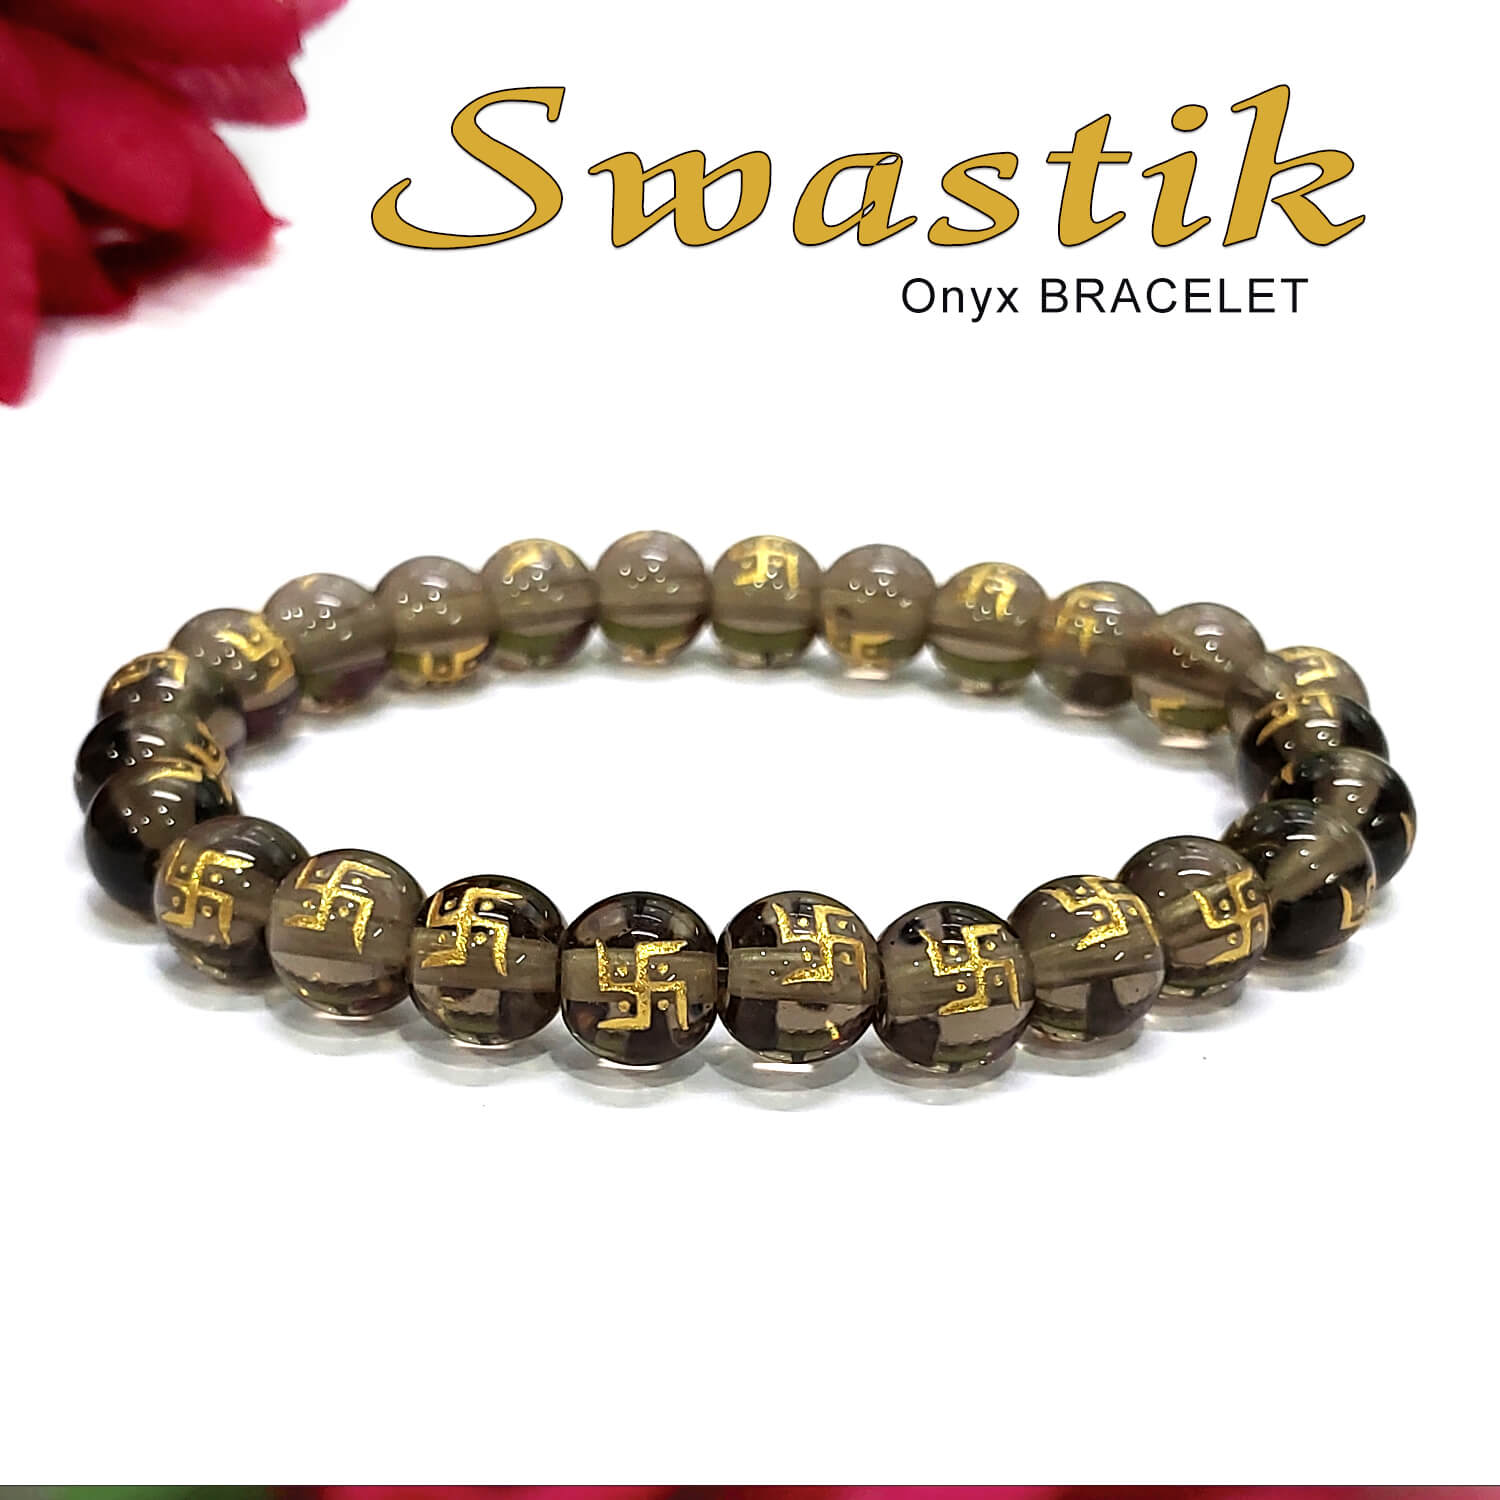 Buy Reiki Crystal Products Natural Black Onyx Bracelet Crystal Stone 12mm  Faceted Bracelet for Reiki Healing and Crystal Healing Stones | Globally